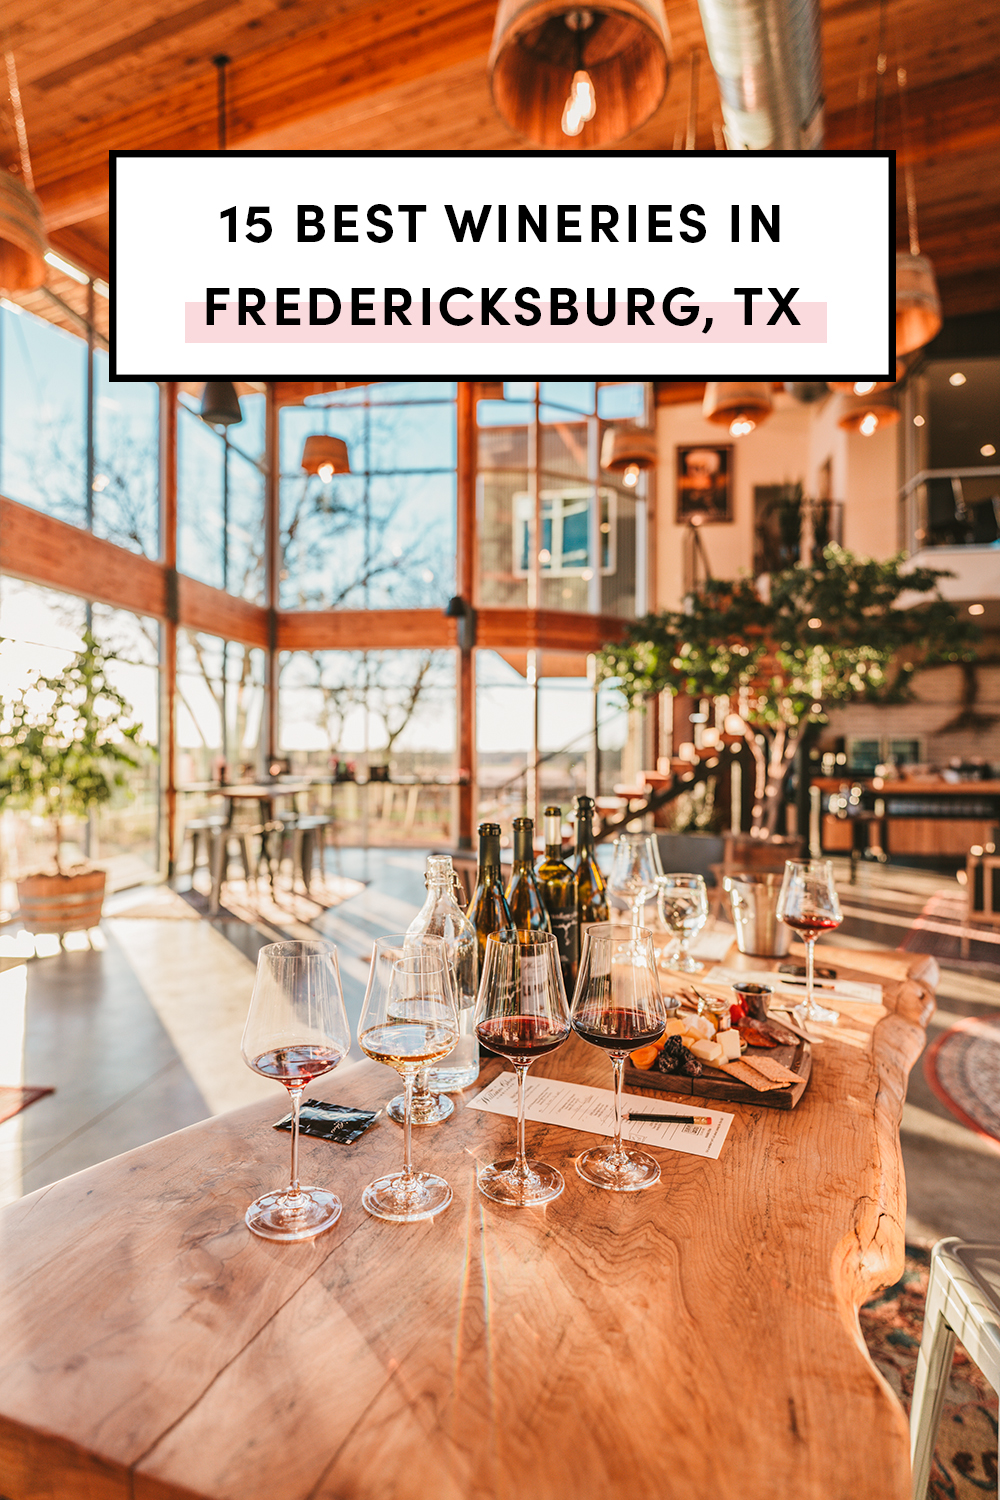 Best wineries & vineyards in Fredericksburg Texas